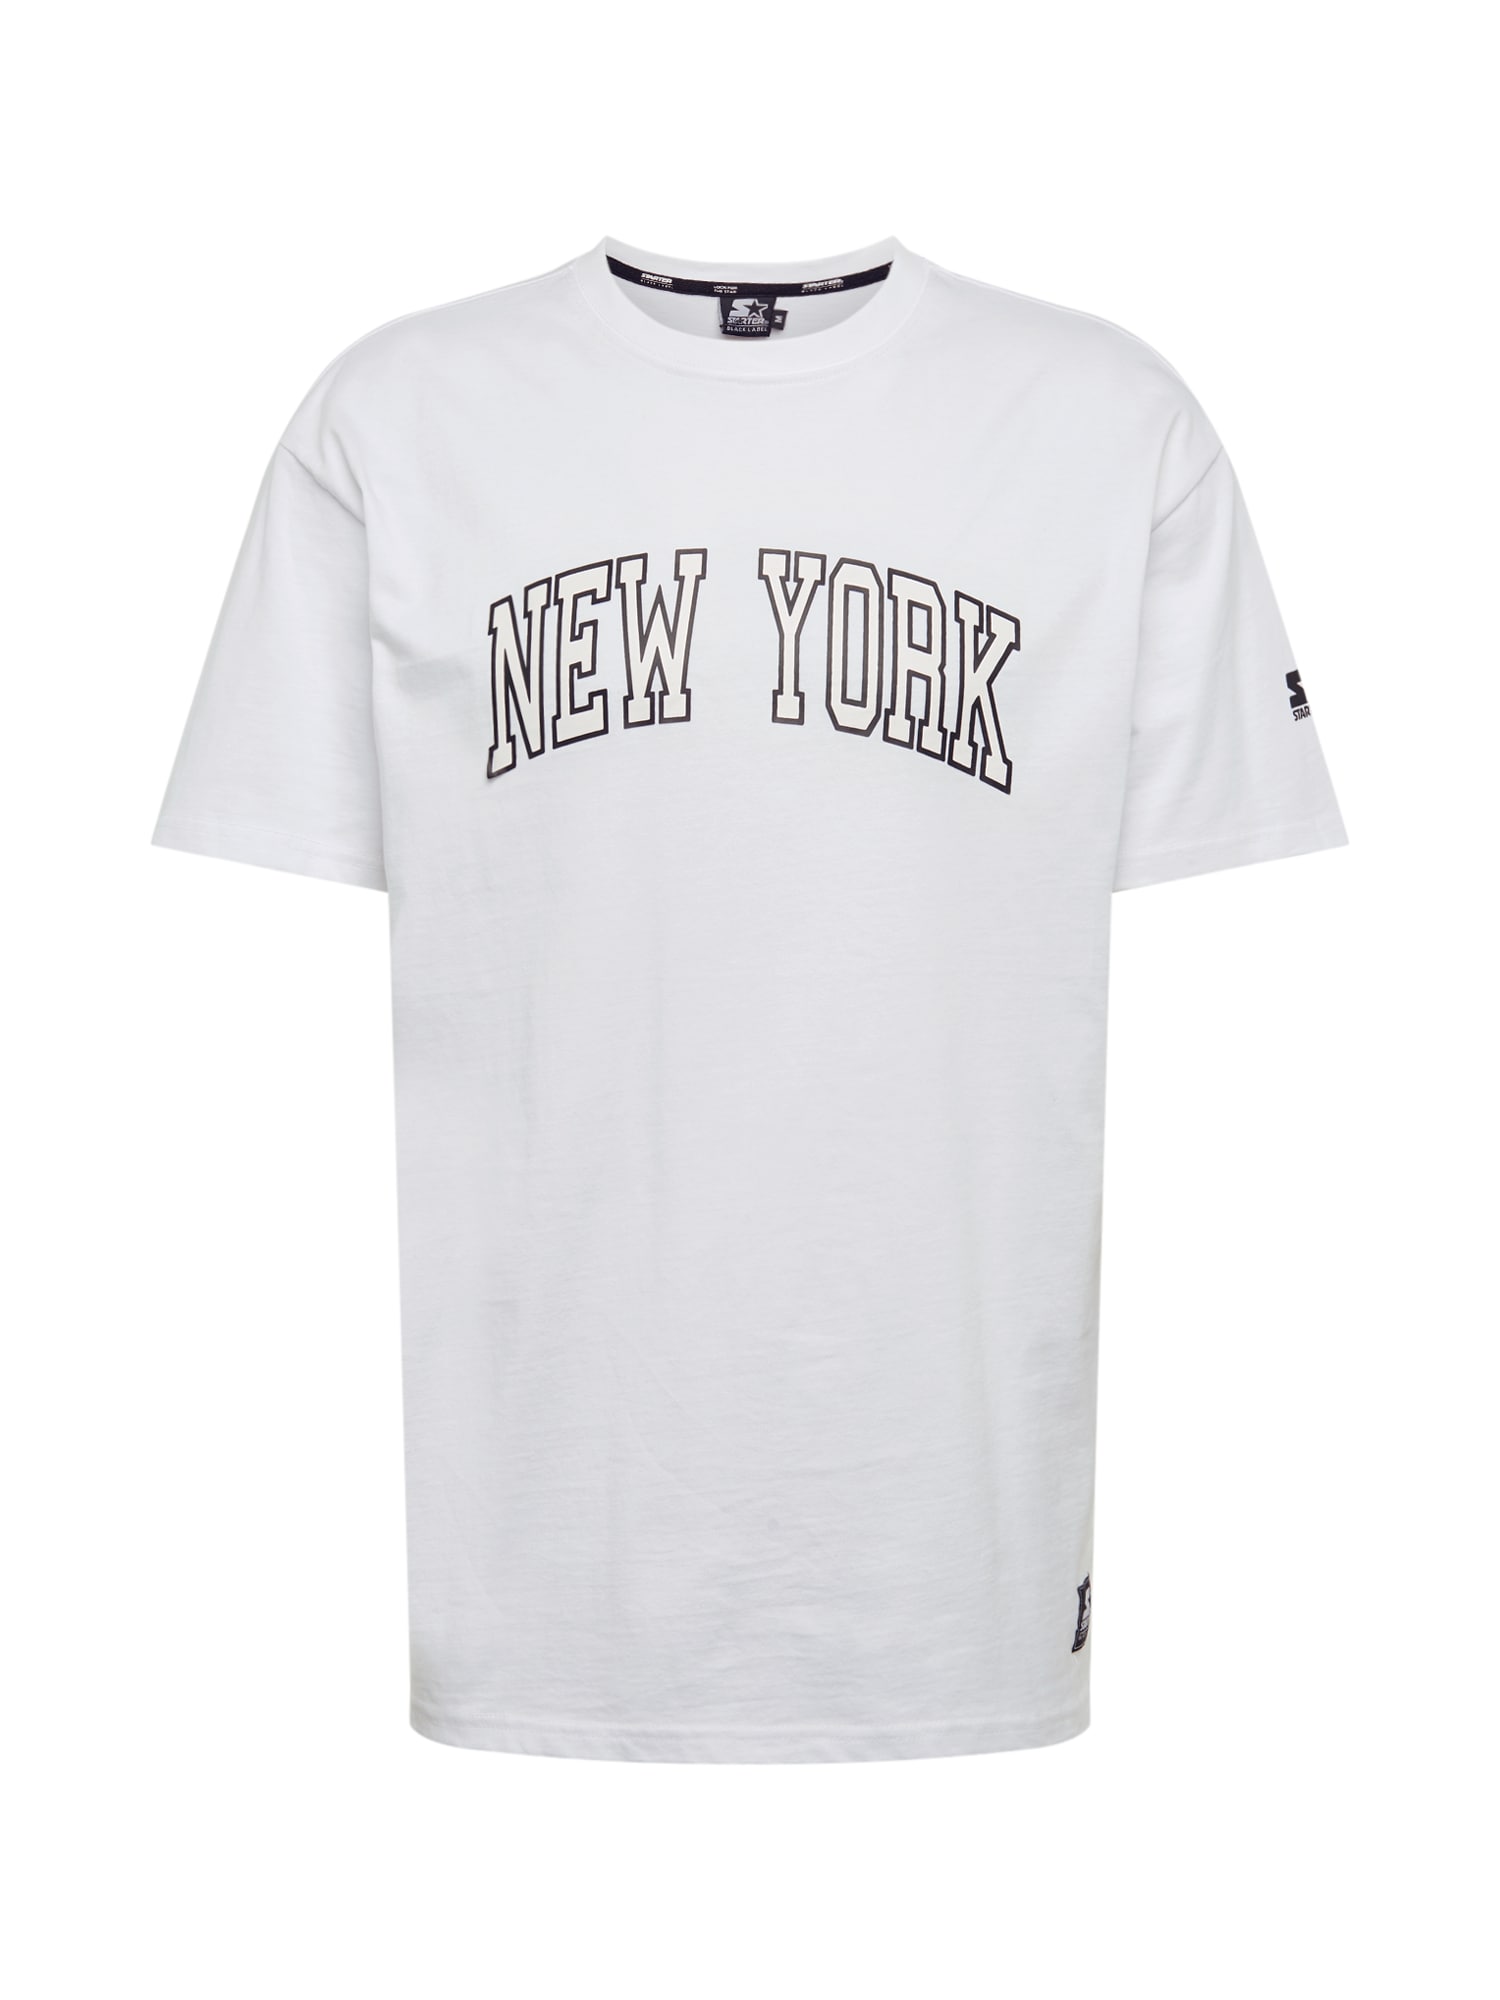 Starter Black Label Marškinėliai 'New York' juoda / balta